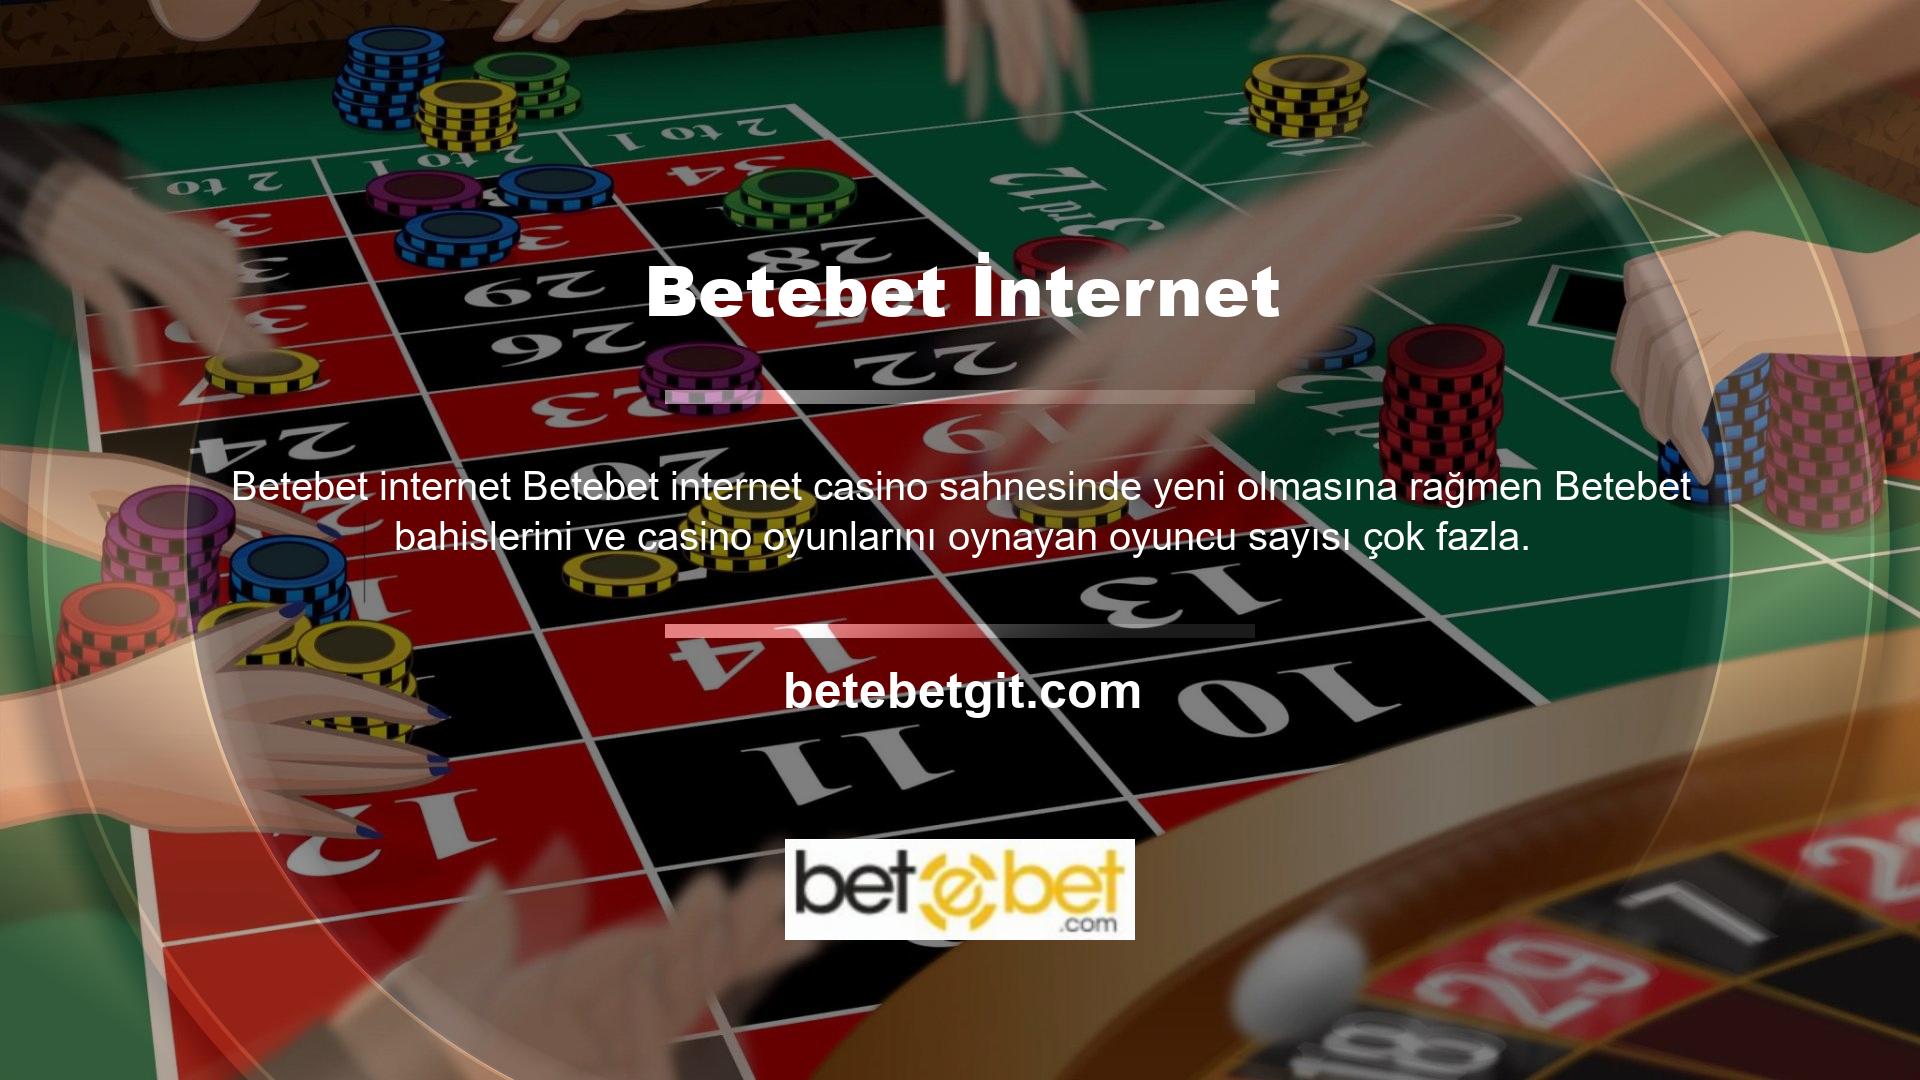 Kullanıcı sayısındaki artış Betebet casino sitesinin güvenilirliğini göstermektedir